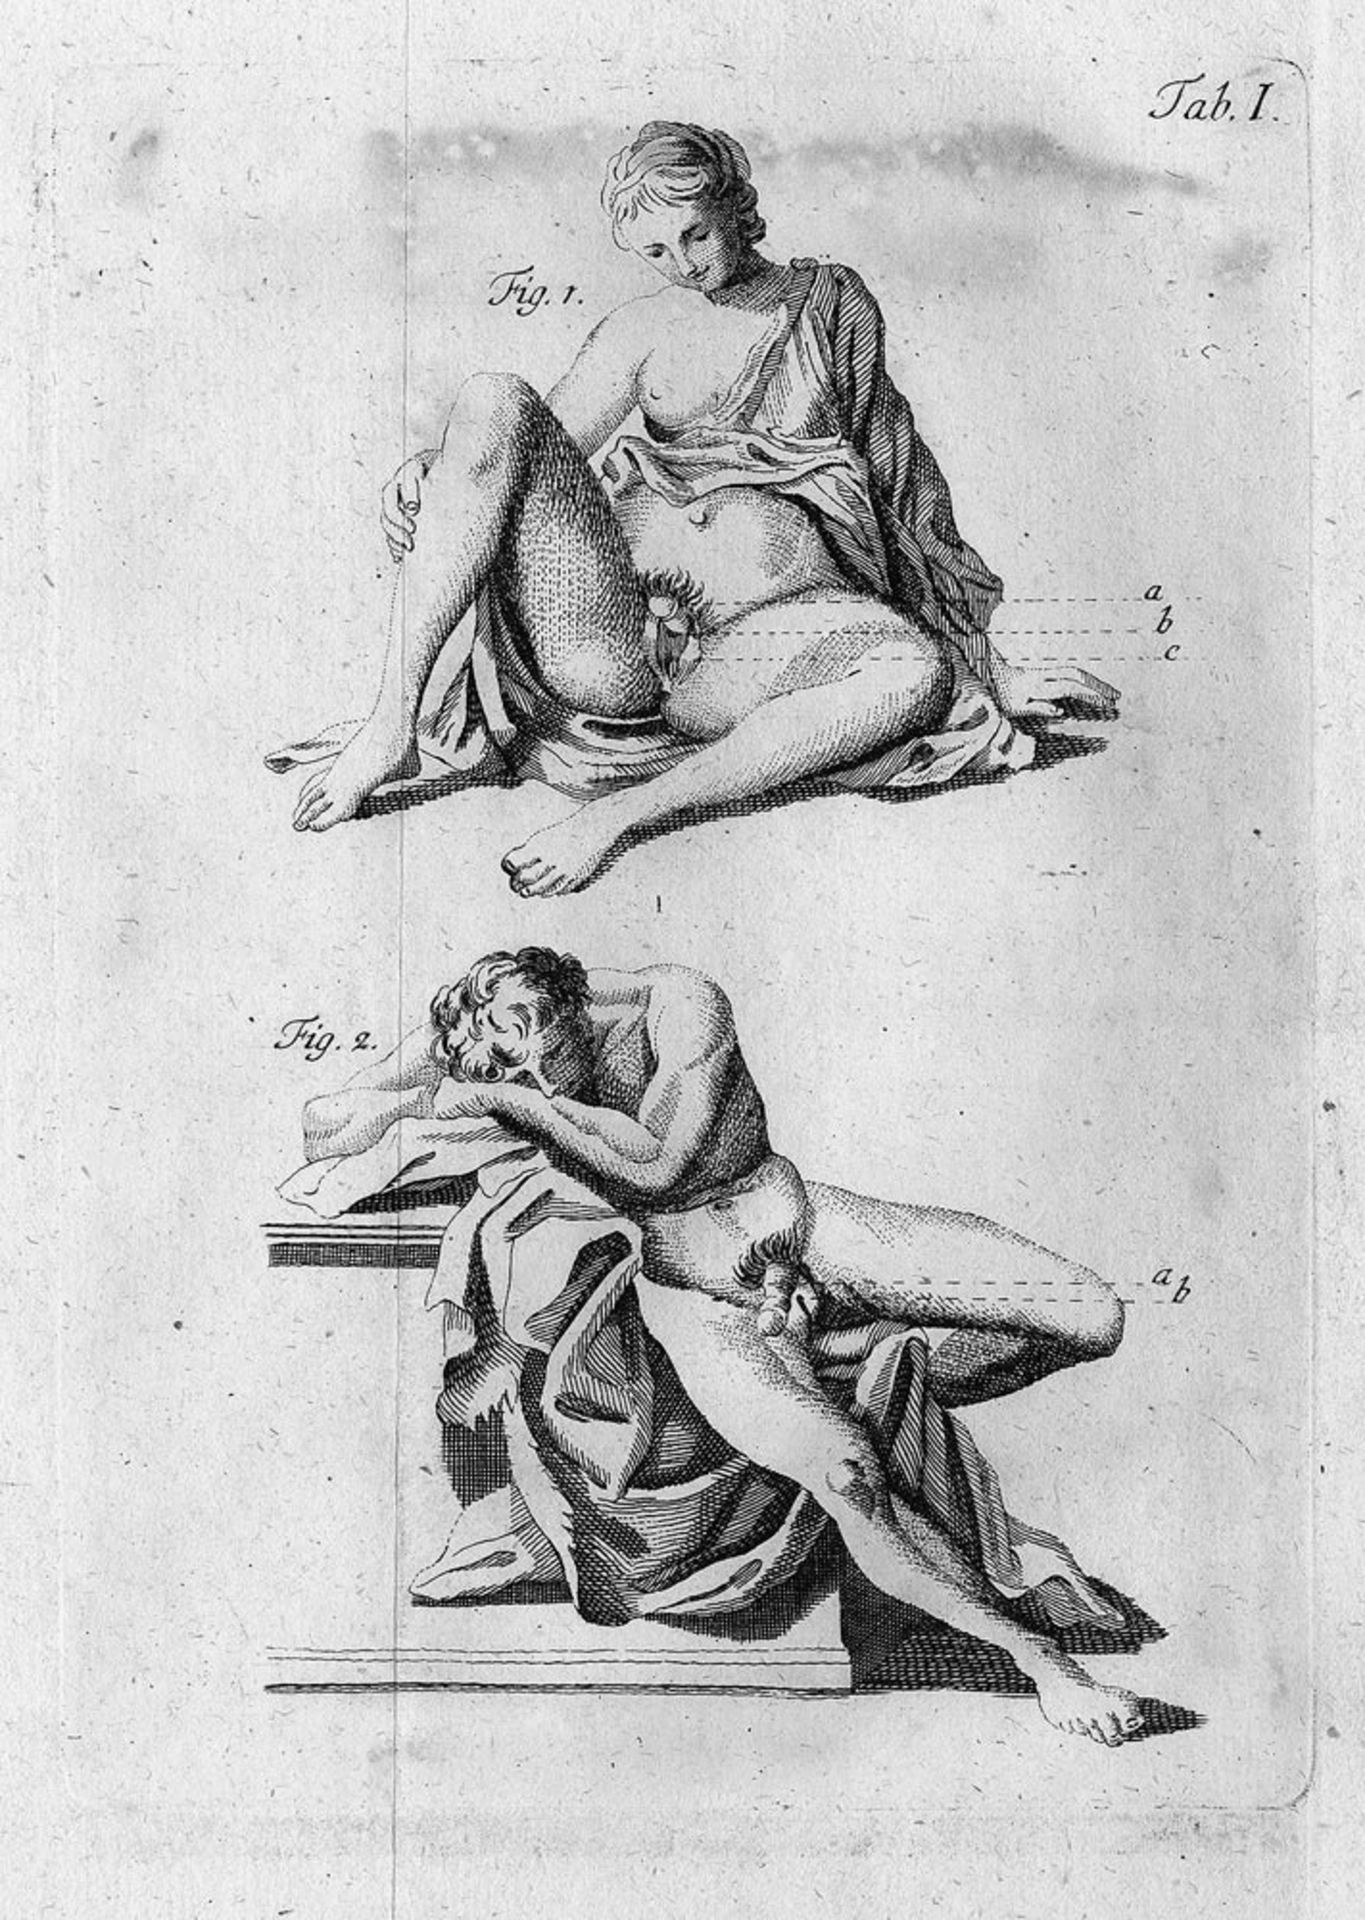 Arnaud de Ronsil, Georg: Anatomisch-Chirurgische Abhandlung über die Hermaphroditen